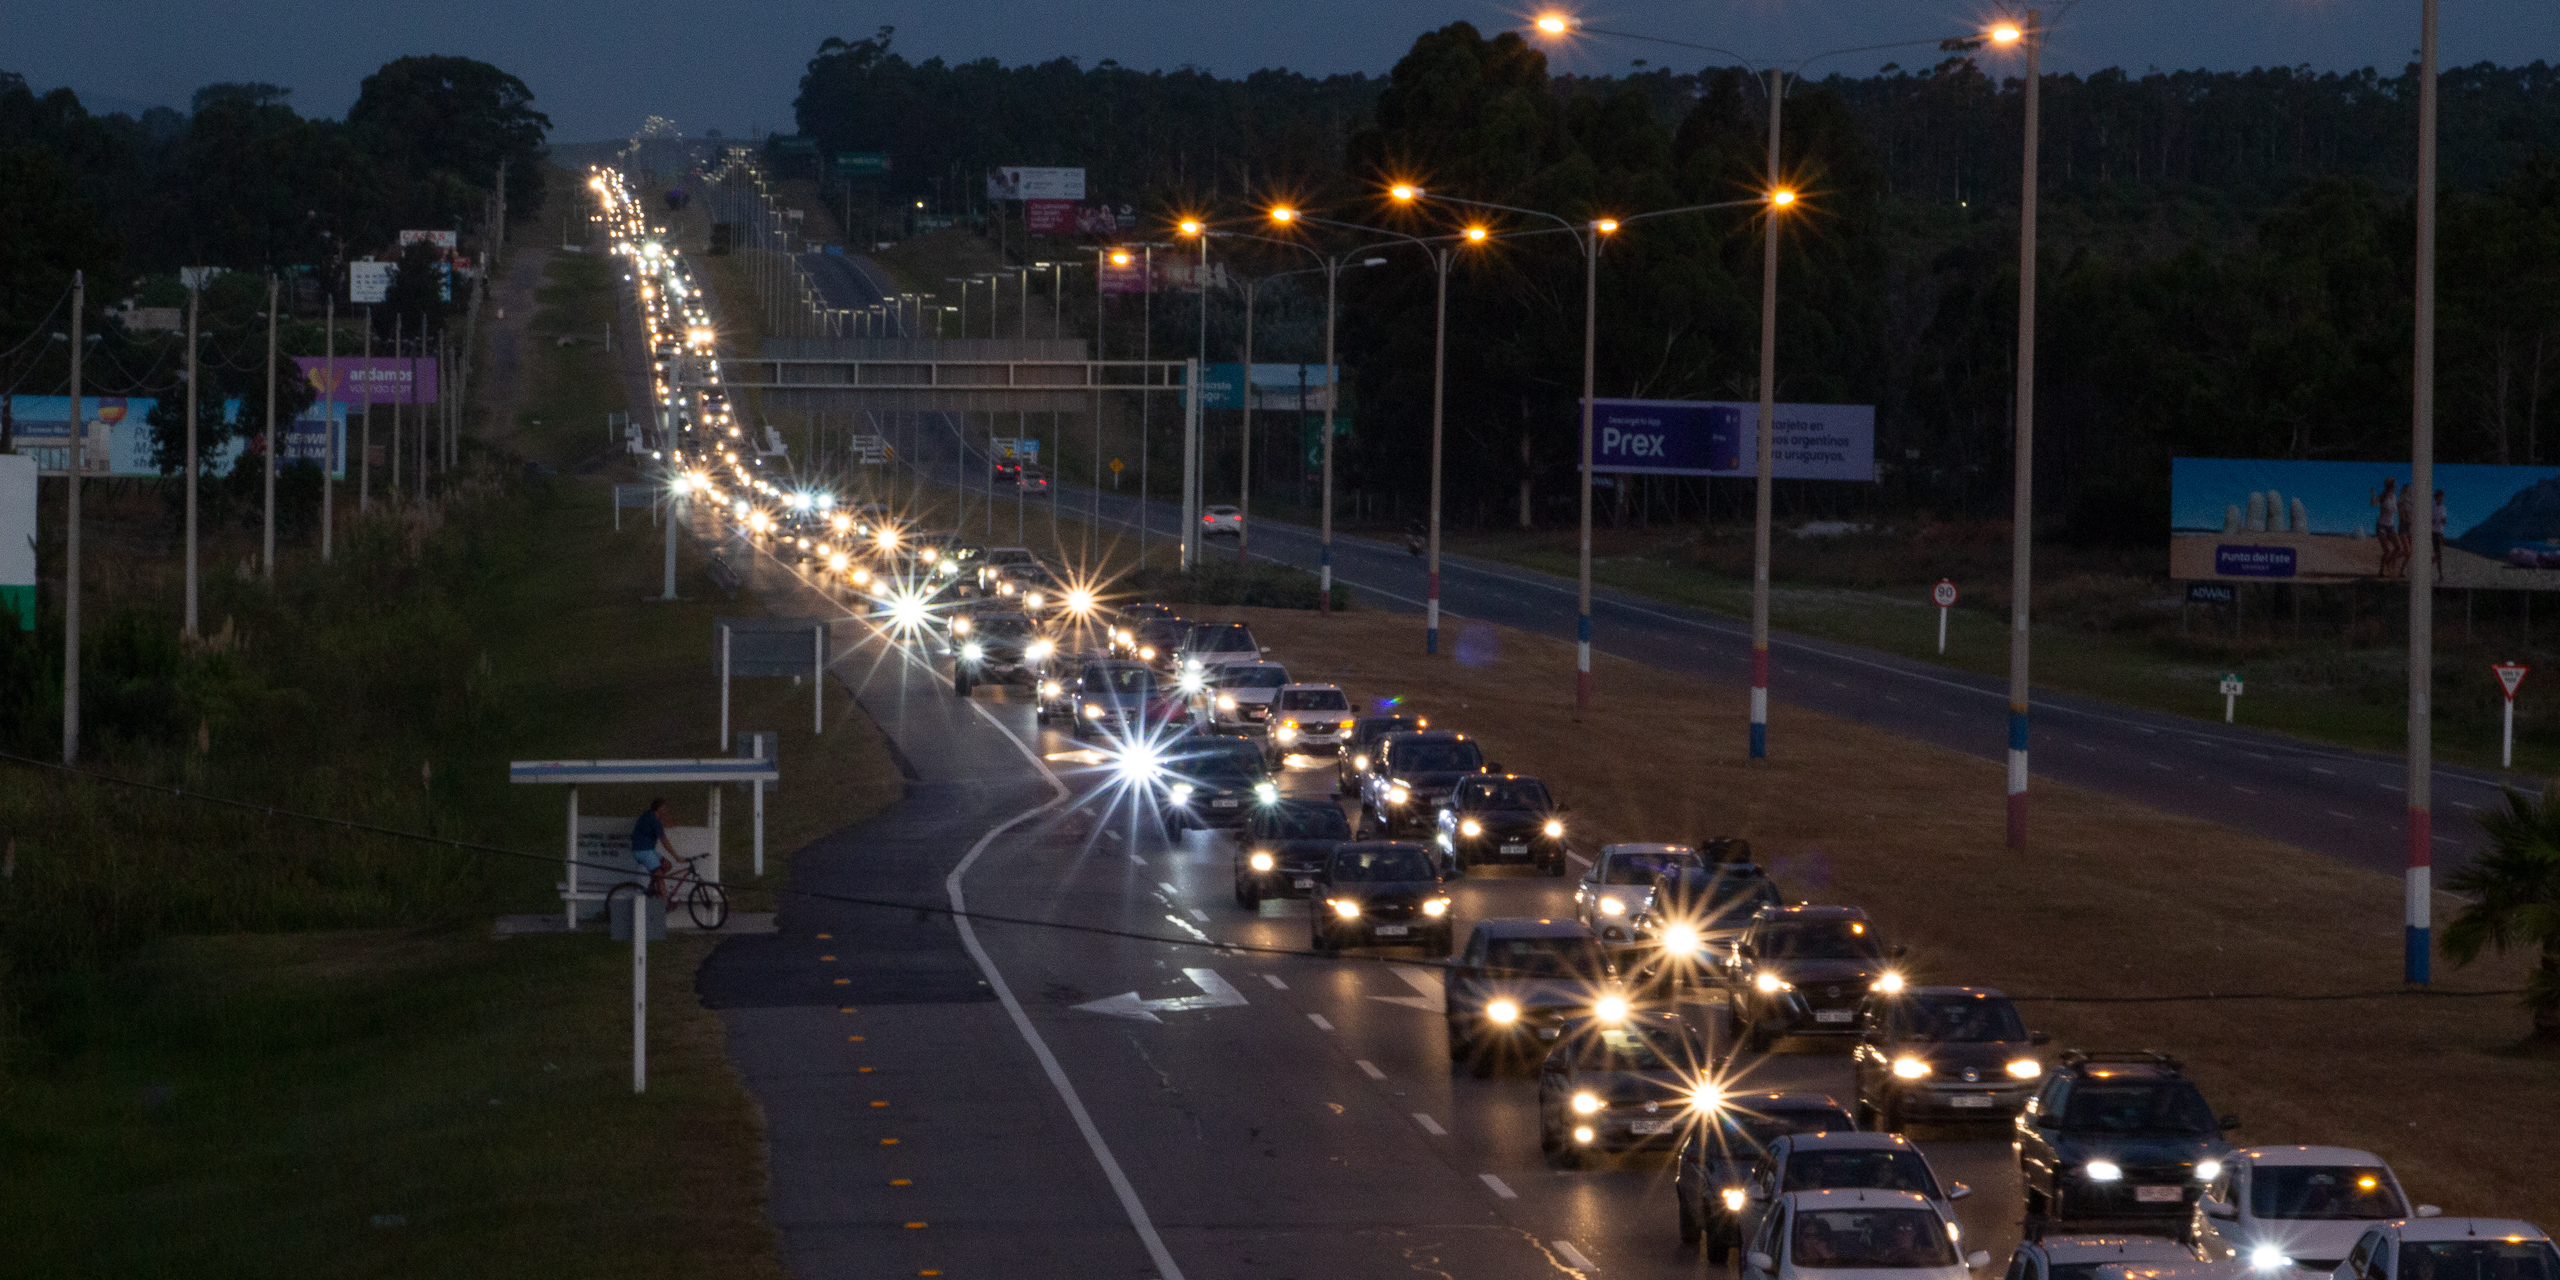 <p>El tráfico entre Montevideo y la ciudad costera de Punta del Este se vuelve especialmente denso los fines de semana. Se ha propuesto una autopista de alta velocidad para aliviar la congestión, pero el proyecto fue cancelado por la oposición de la comunidad (Imagen: Ramiro Barreiro / Dialogue Earth)</p>